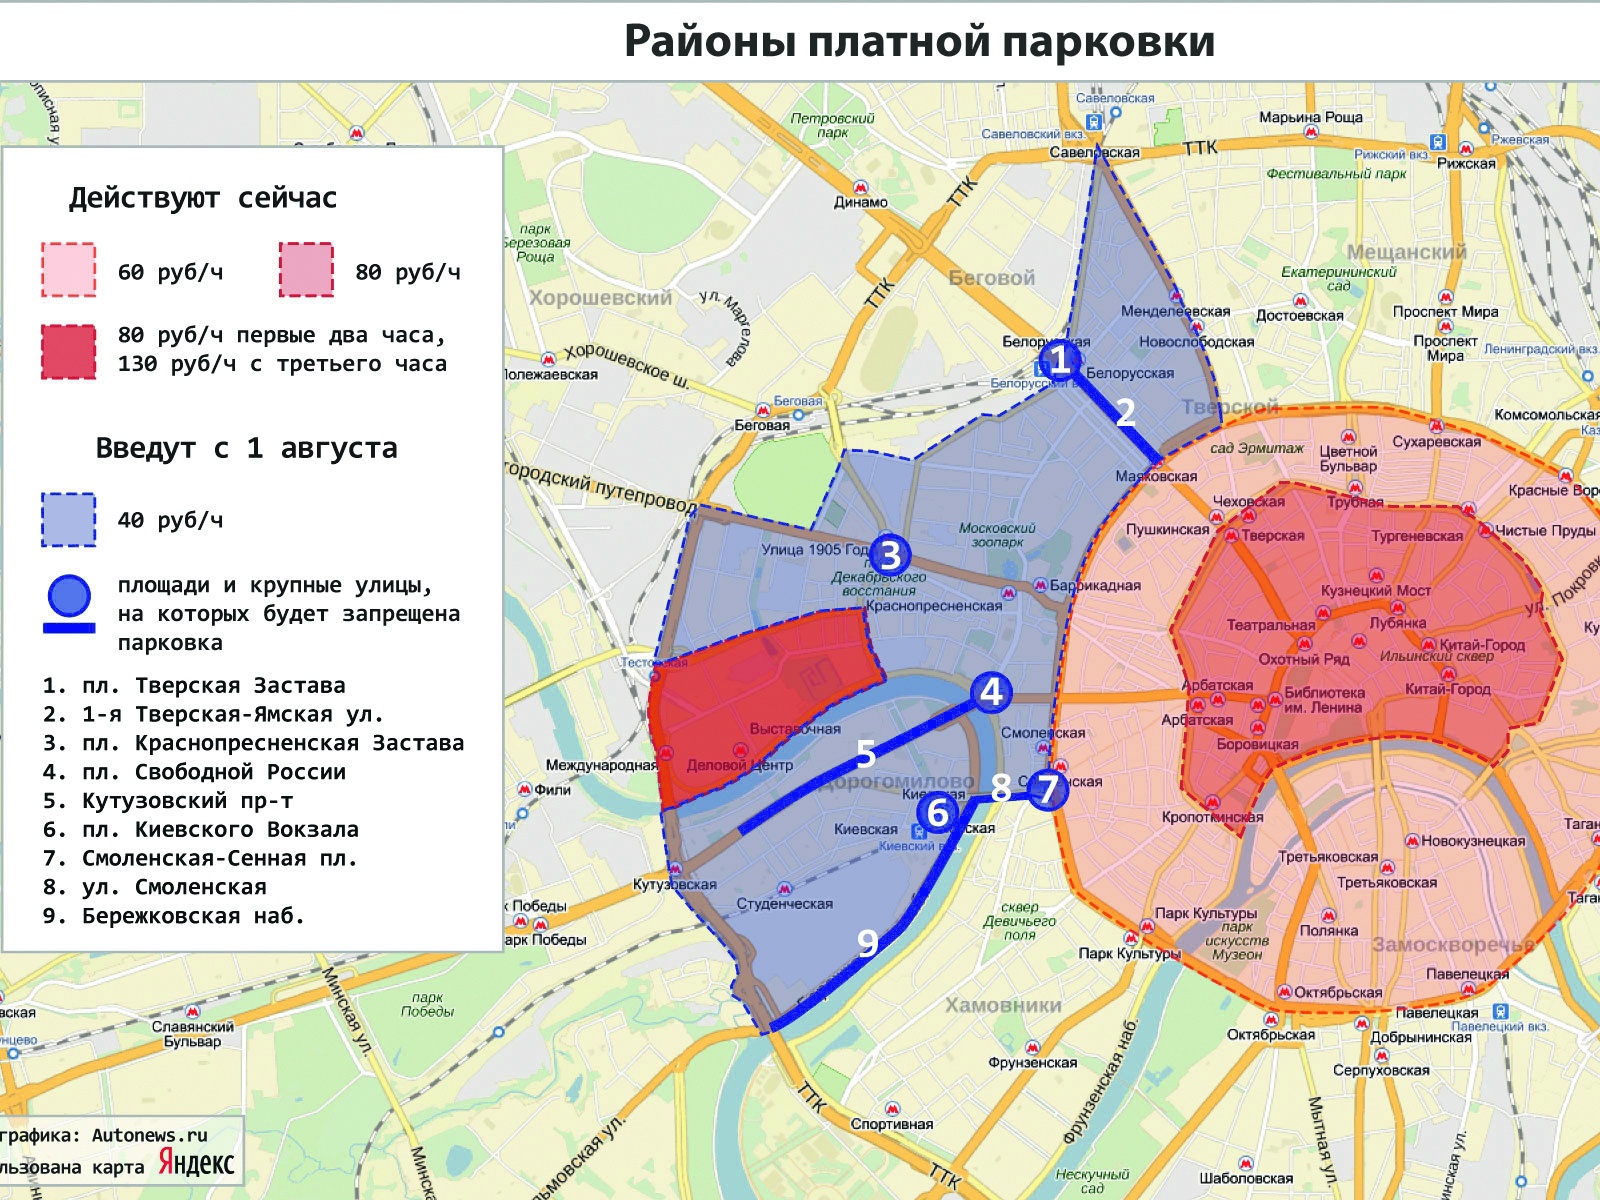 Зоны общественного транспорта. Зона платной парковки 304 Чебоксары. Парковочные зоны в Москве на карте. Зона резидентской парковки Хамовники. Зона платной парковки 206 Чебоксары.